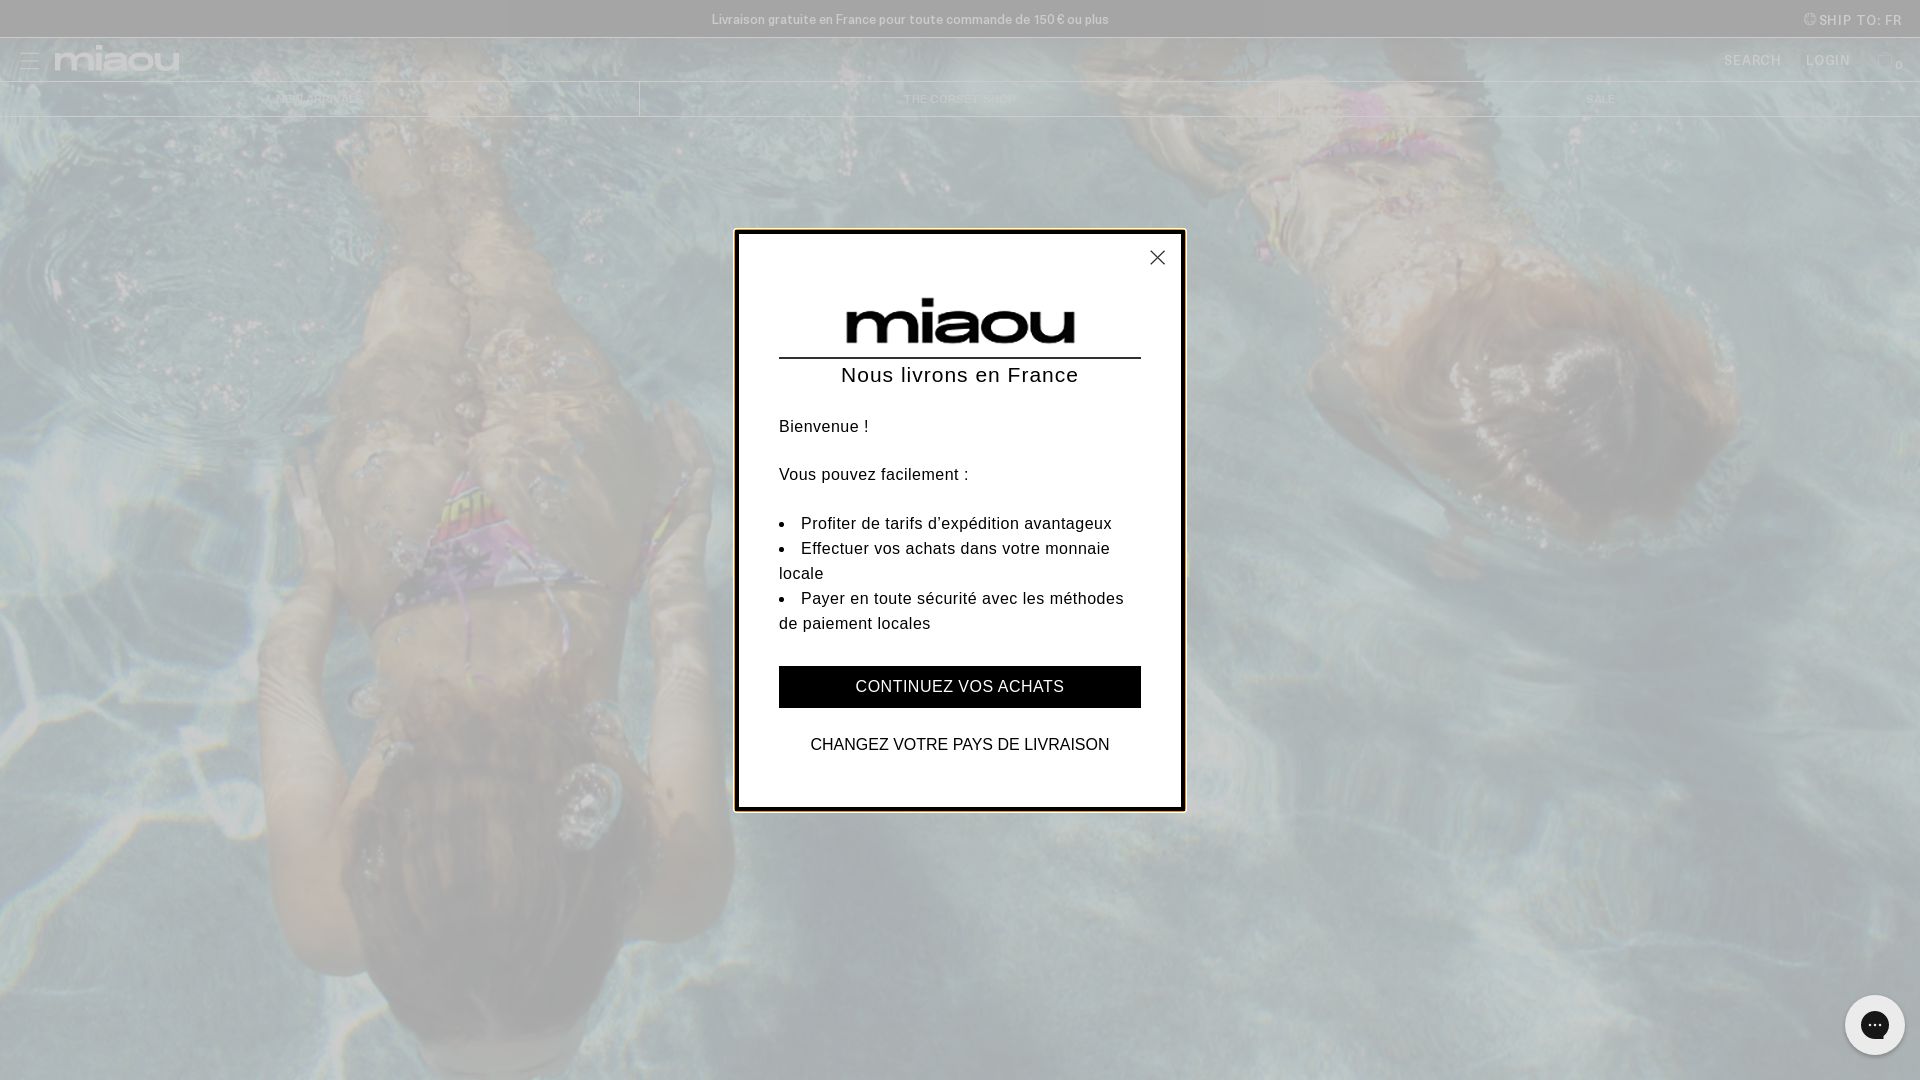 Status do site miaou.com está   ONLINE